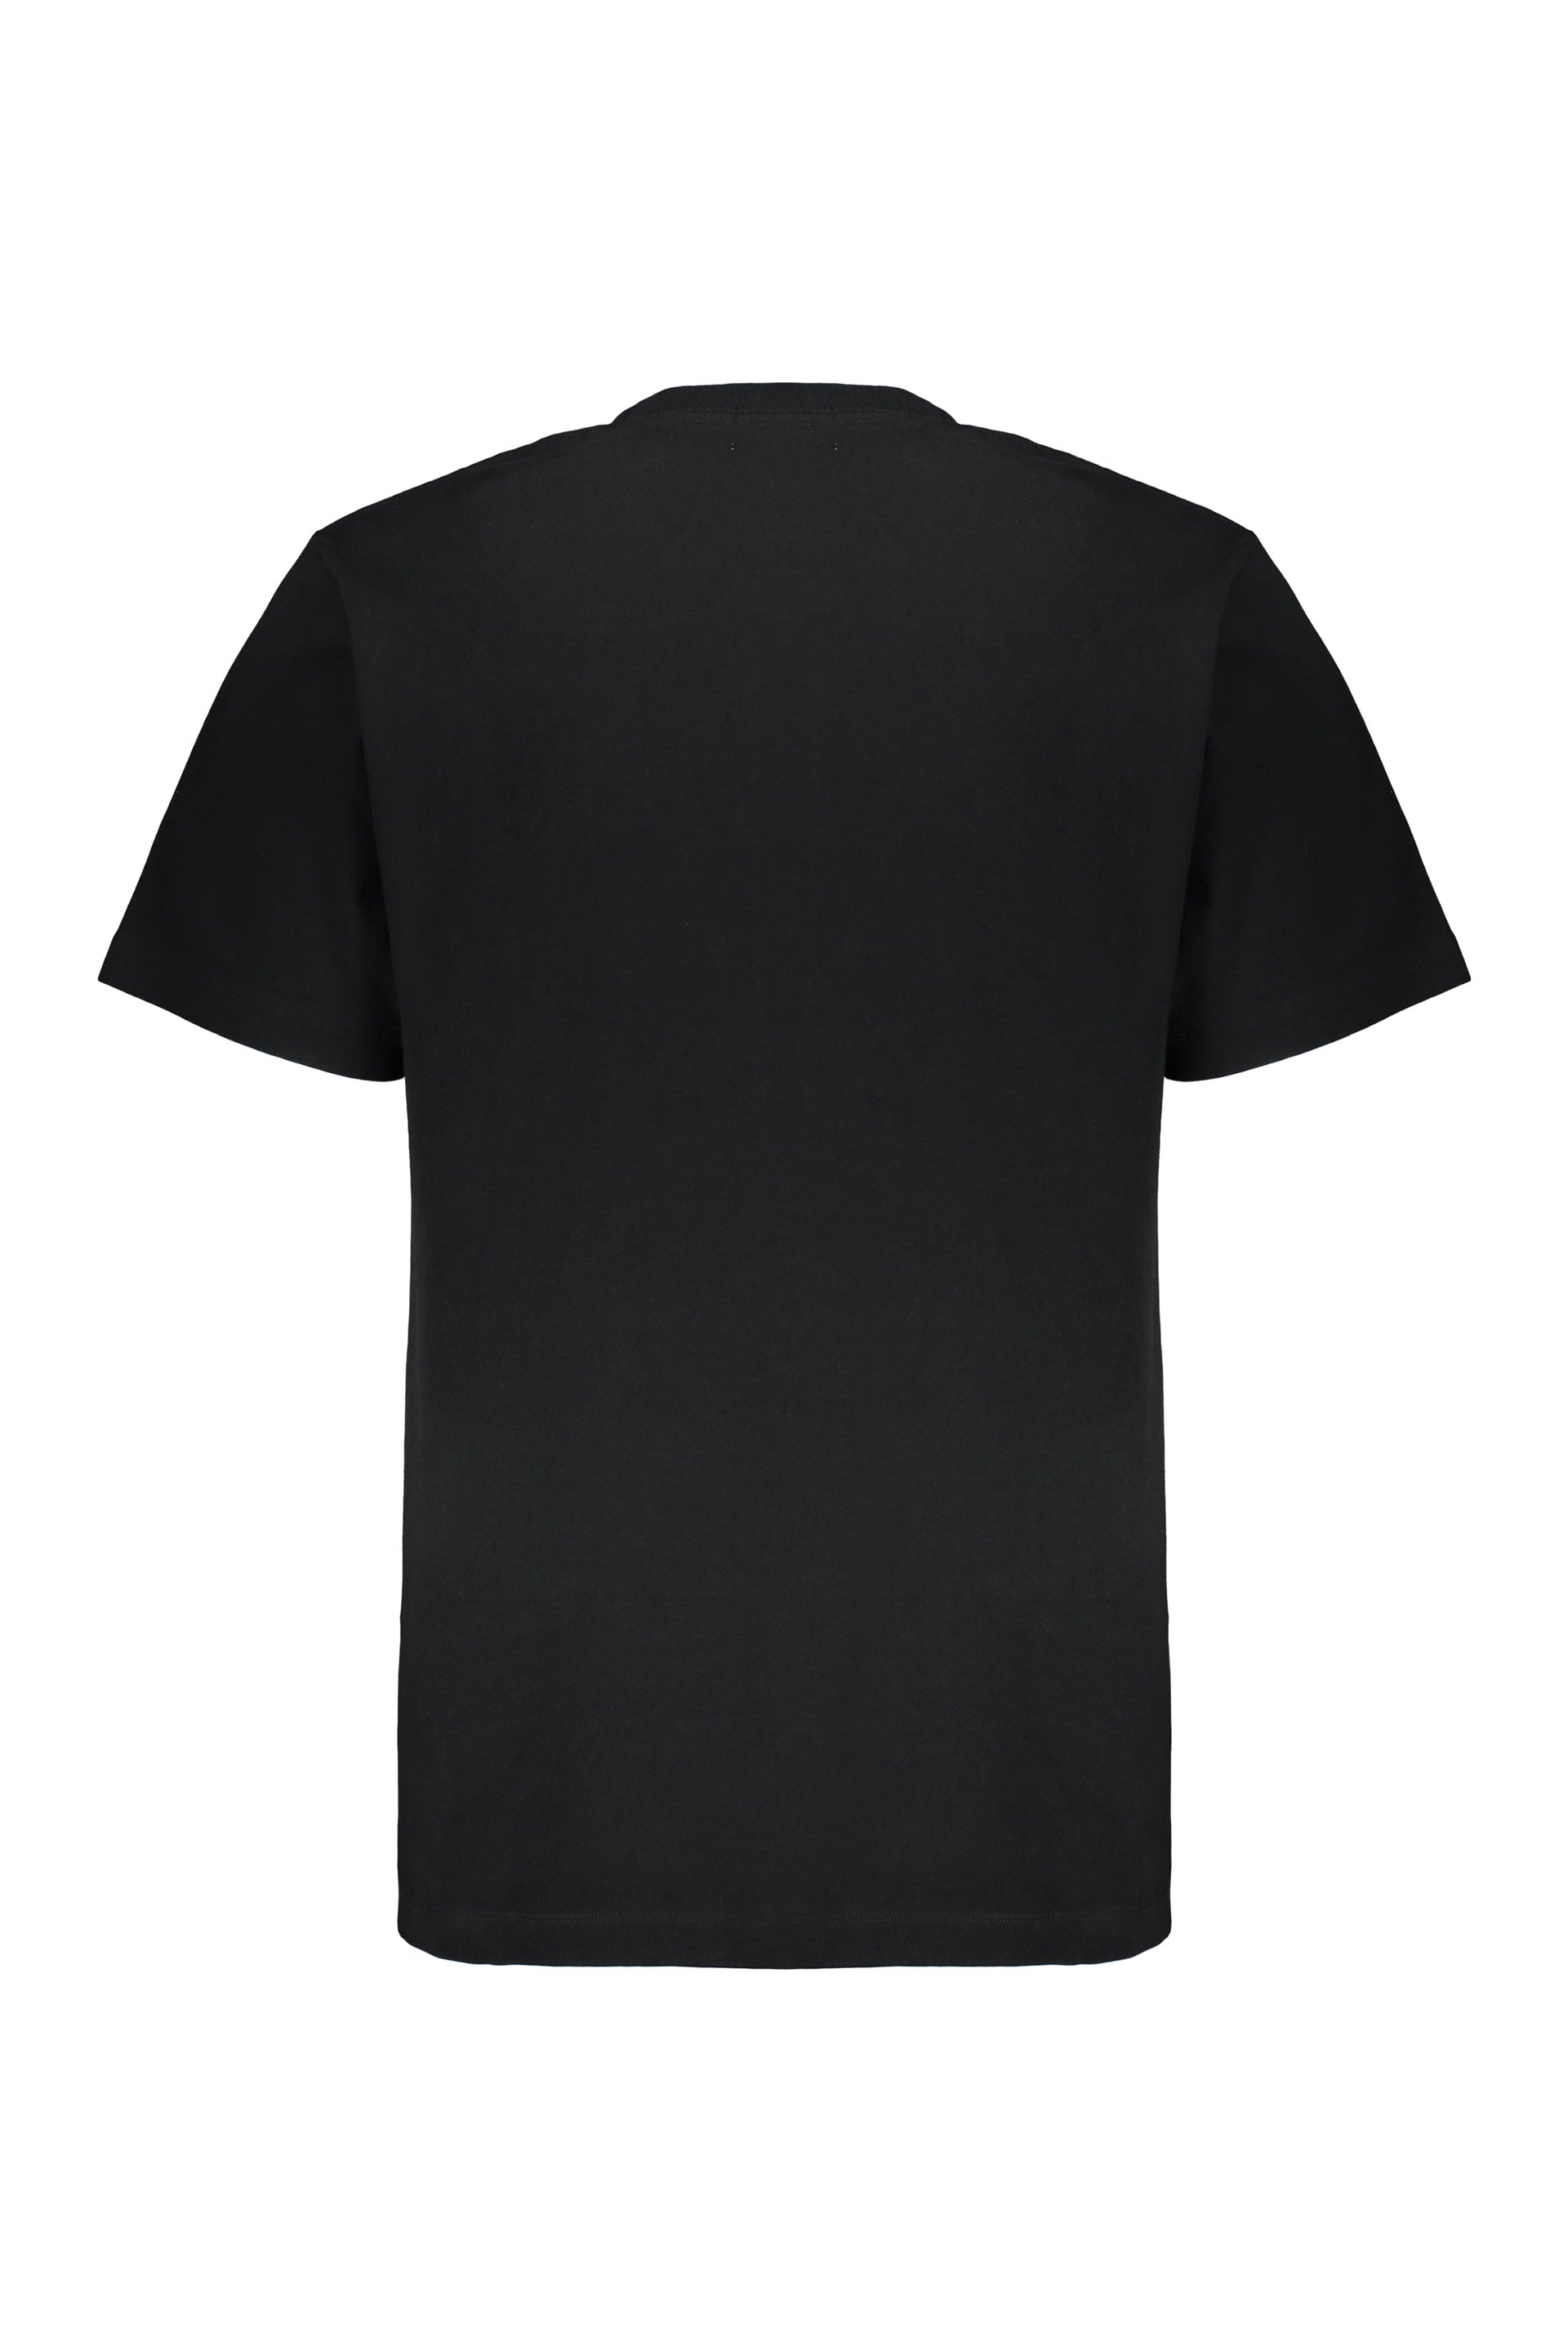 AMBUSH-OUTLET-SALE-Cotton-T-shirt-Shirts-ARCHIVE-COLLECTION-2_9b03b832-aec6-485c-9a07-f578d9f3a9f2.jpg